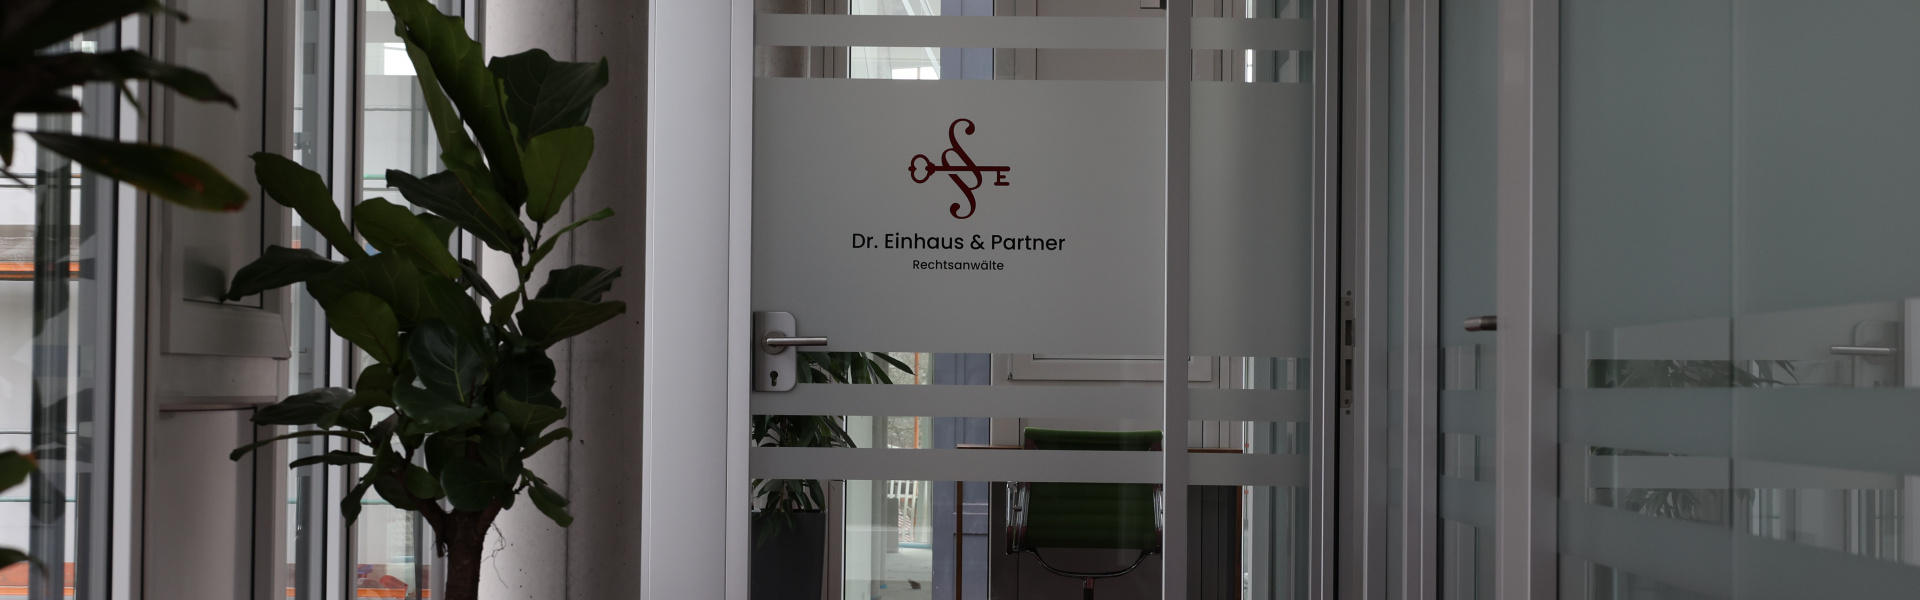 Dr. Einhaus & Partner